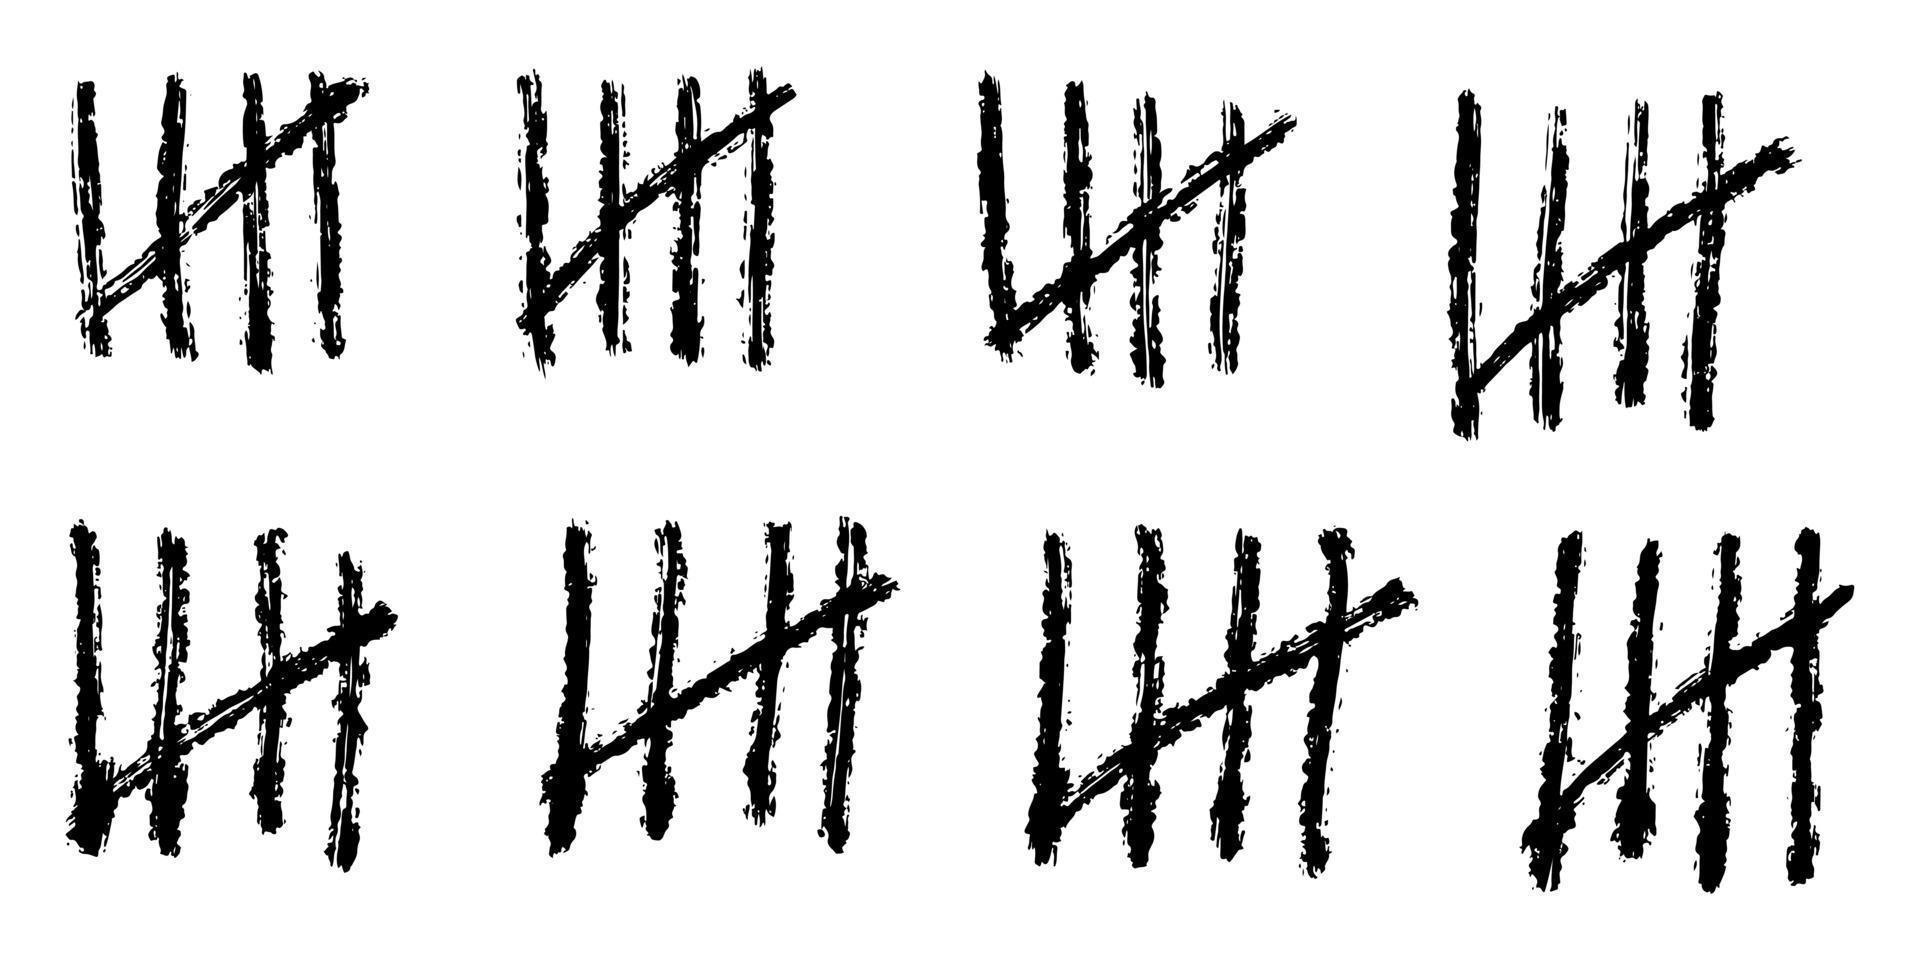 doodle räkna bar. räkna dagarna räknade i snedstreck på väggarna på en öde ö eller fängelse. vektor illustration.